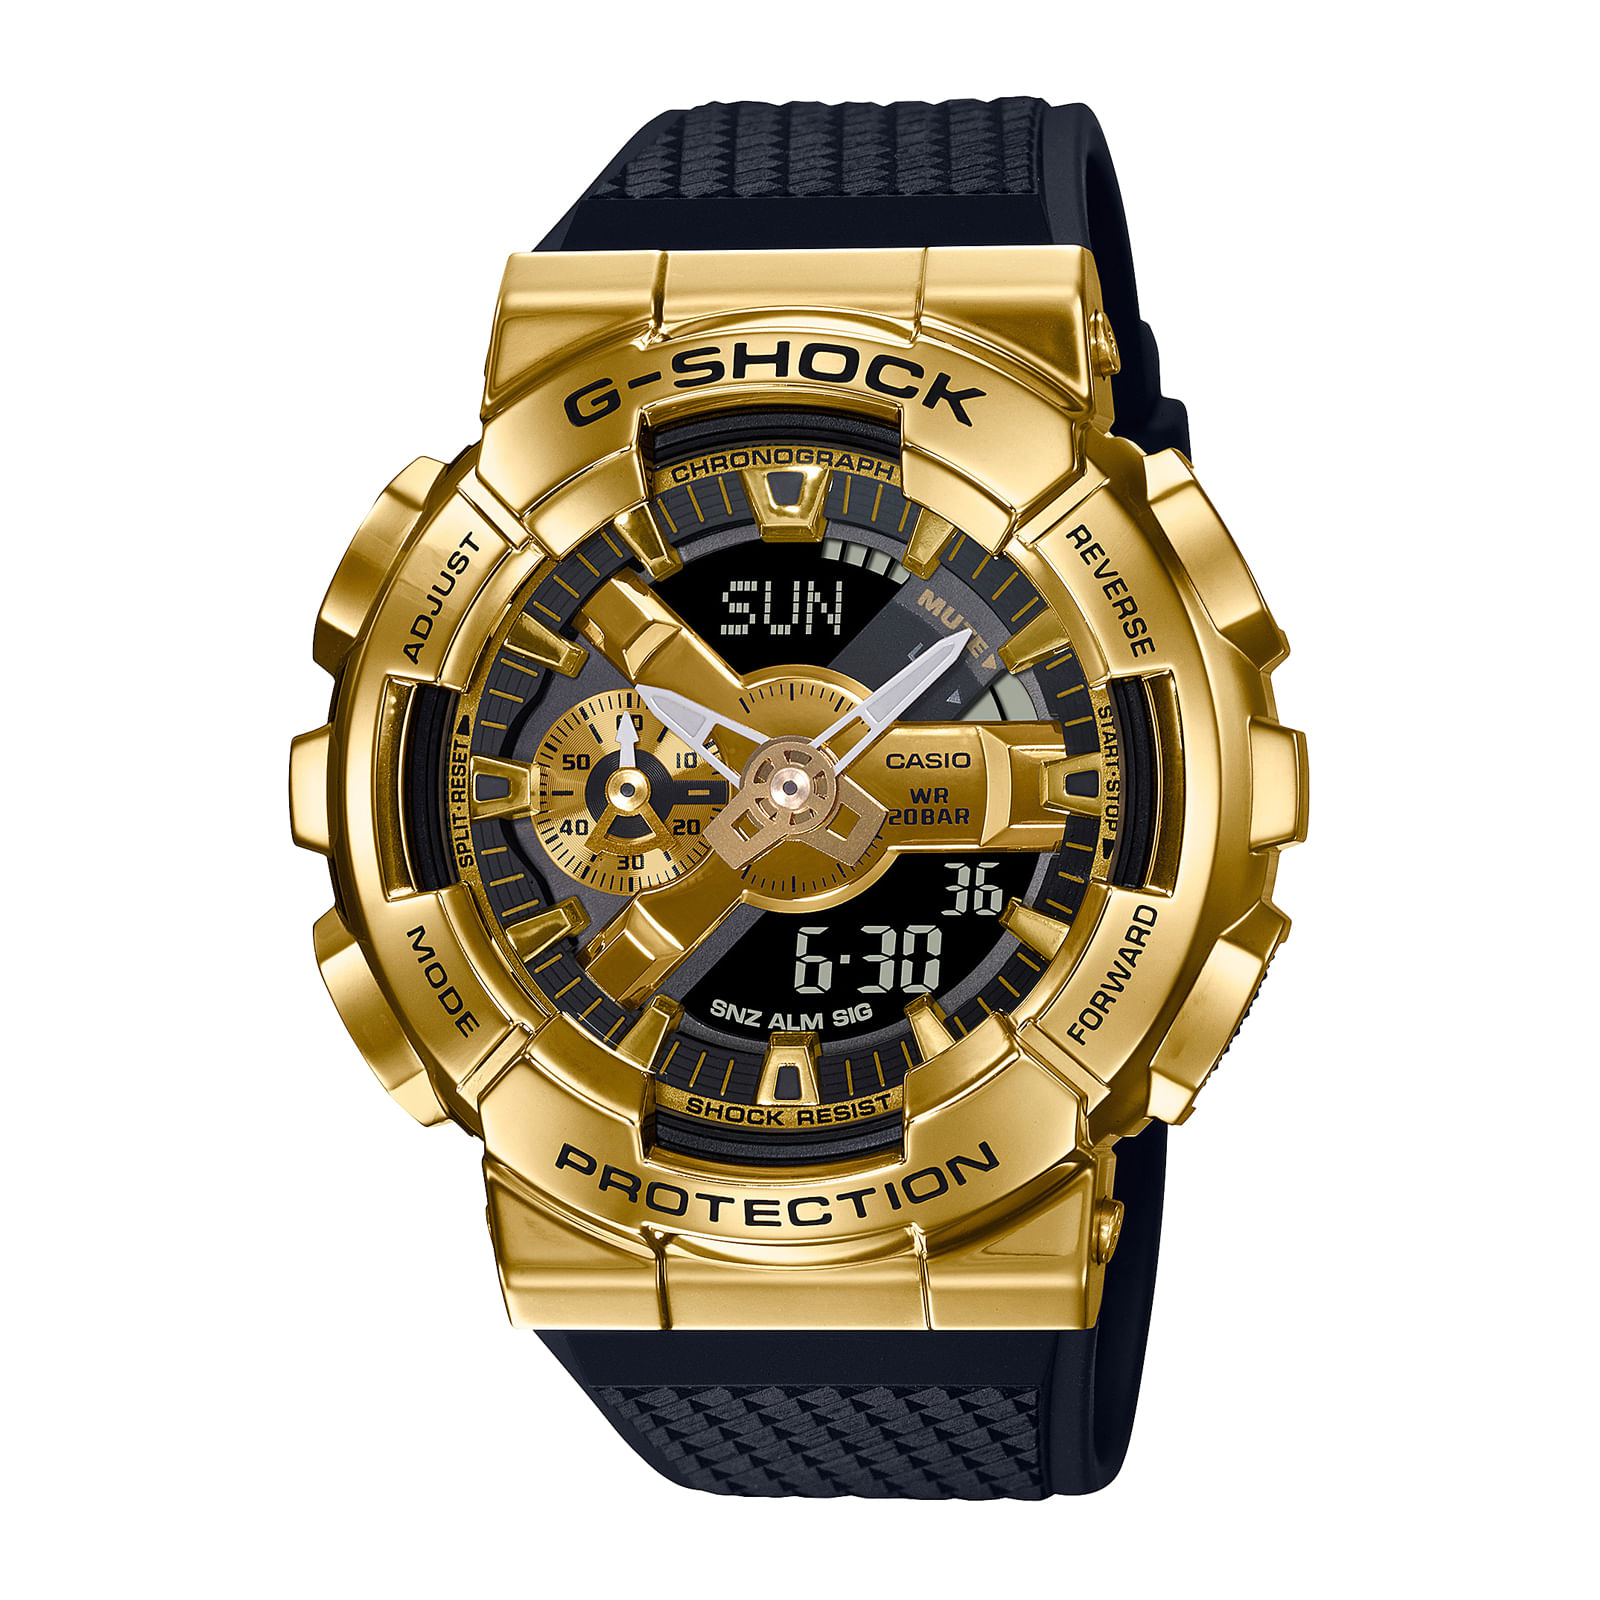 Reloj G-SHOCK GM-110G-1A9 Resina/Acero Hombre Dorado